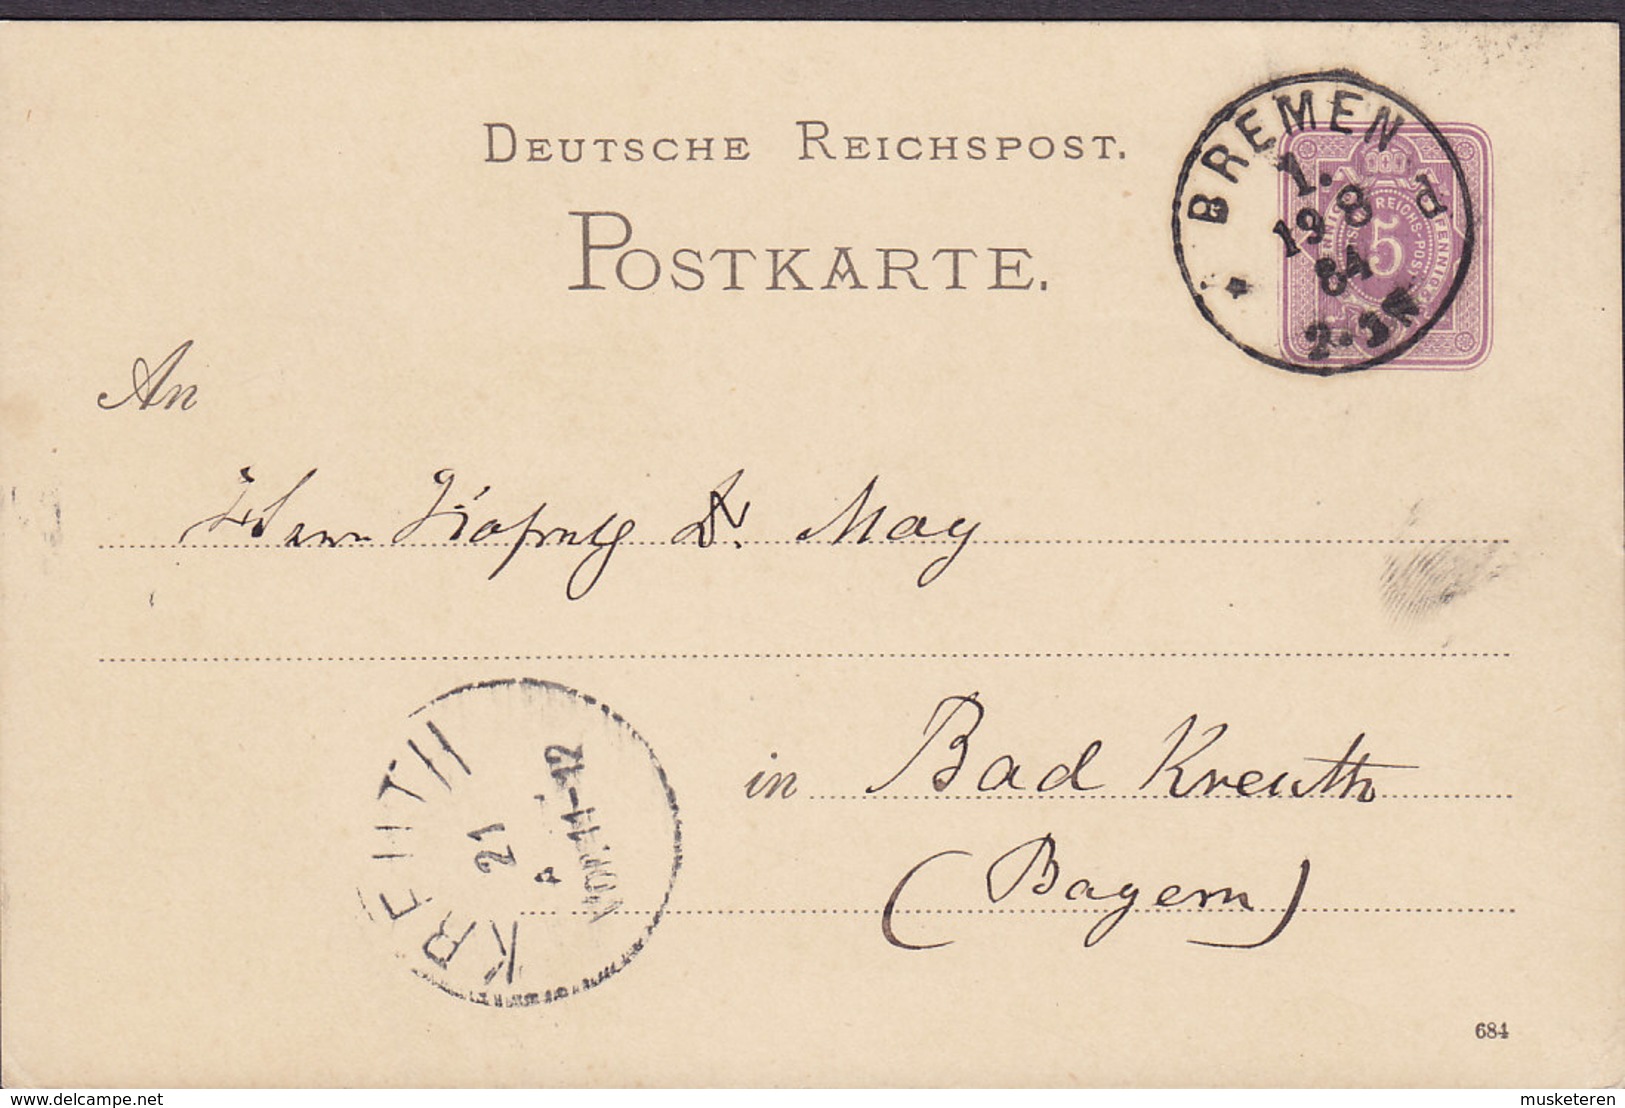 Germany Deutsche Reichspost Postal Stationery Ganzsache 5 Pf. (684) BREMEN 1884 Bad KREUTH Bayern (Arr.) (2 Scans) - Cartes Postales